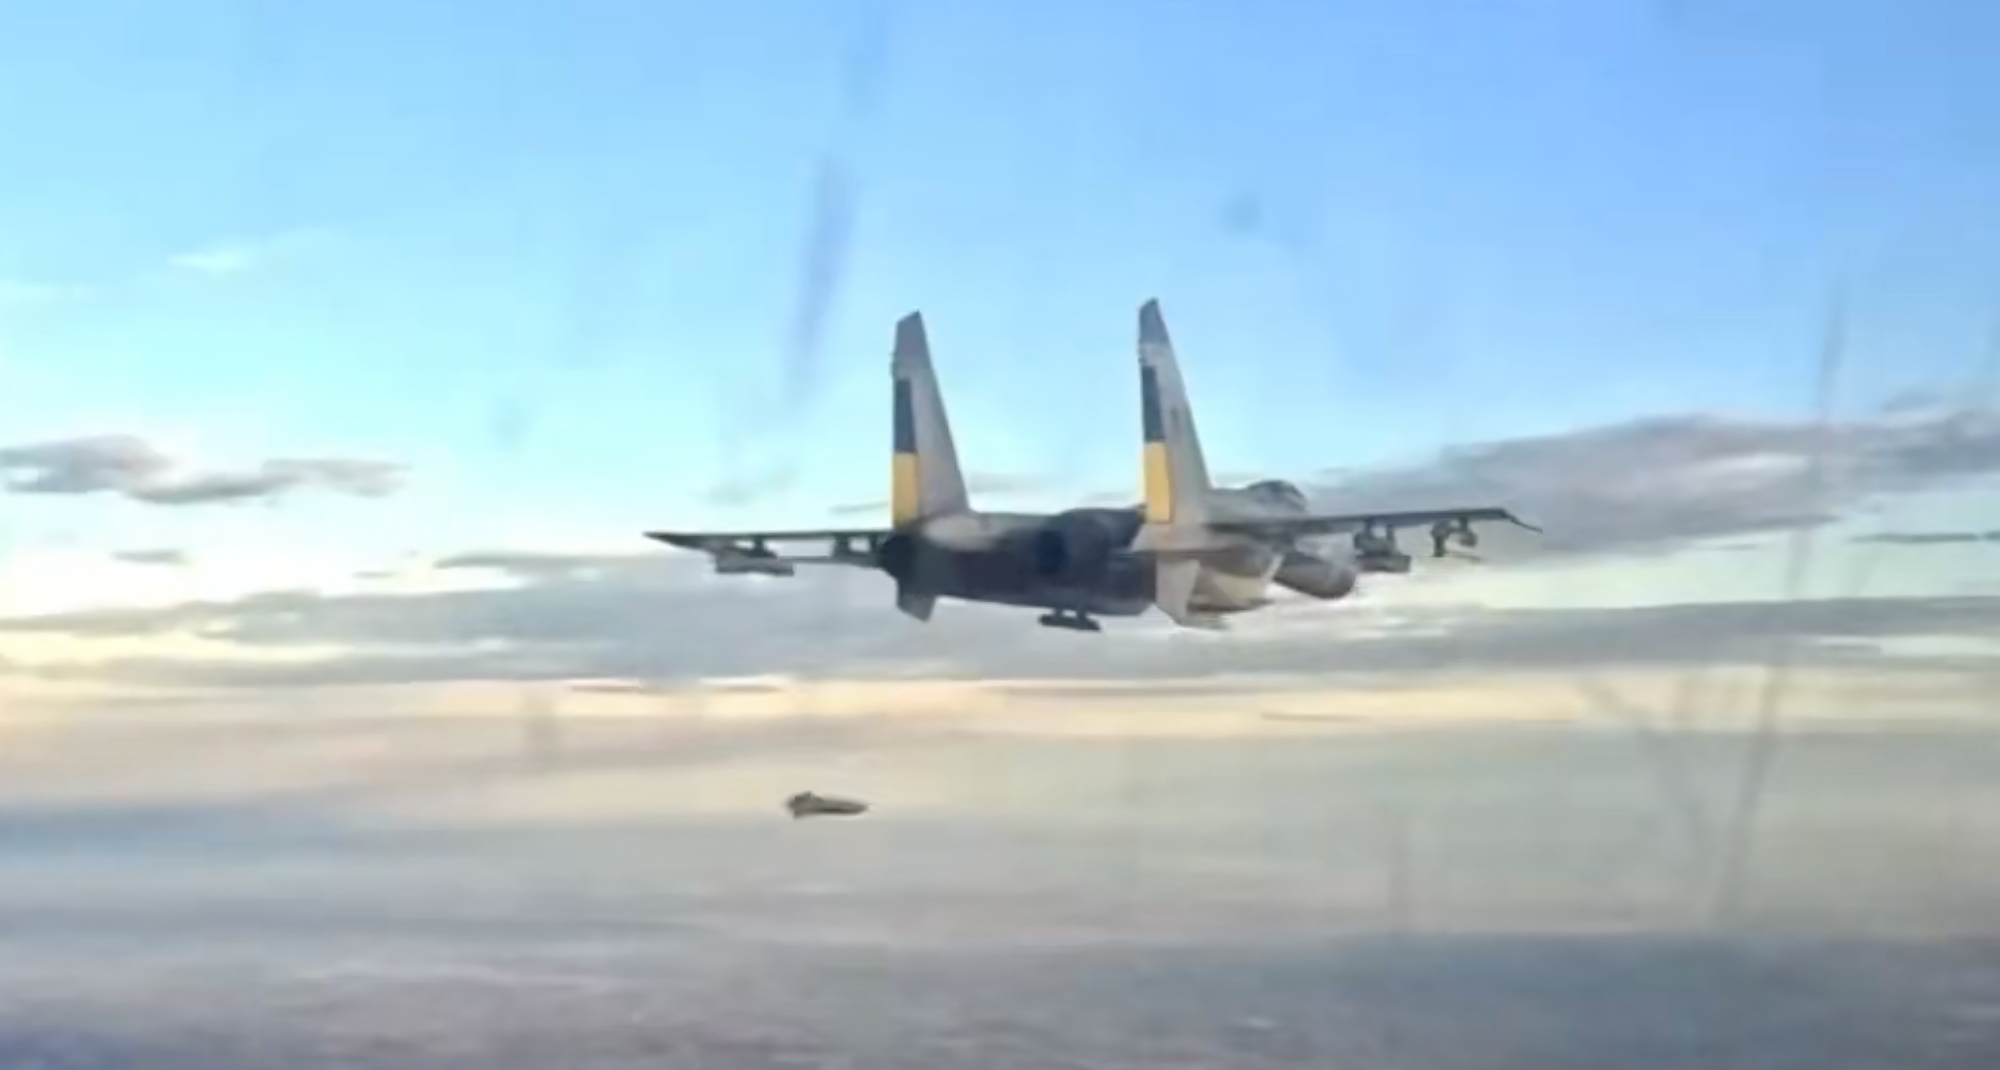 Des images uniques : Des chasseurs ukrainiens Su-27 lancent des bombes françaises AASM-250 Hammer et des missiles américains AGM-88 HARMS.